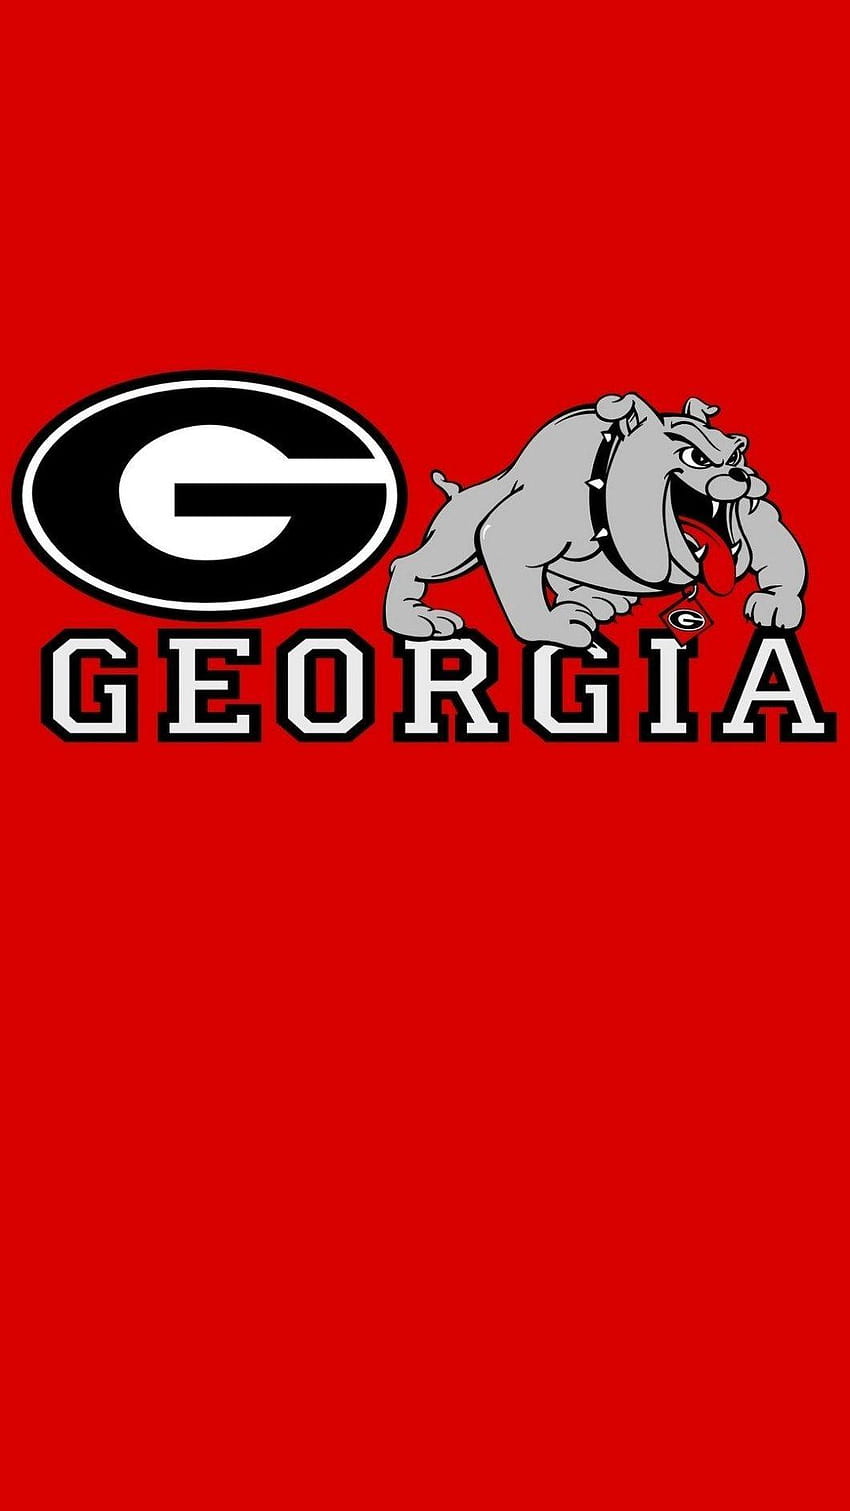 Georgia Bulldogs uga georgia football college HD phone wallpaper   Peakpx